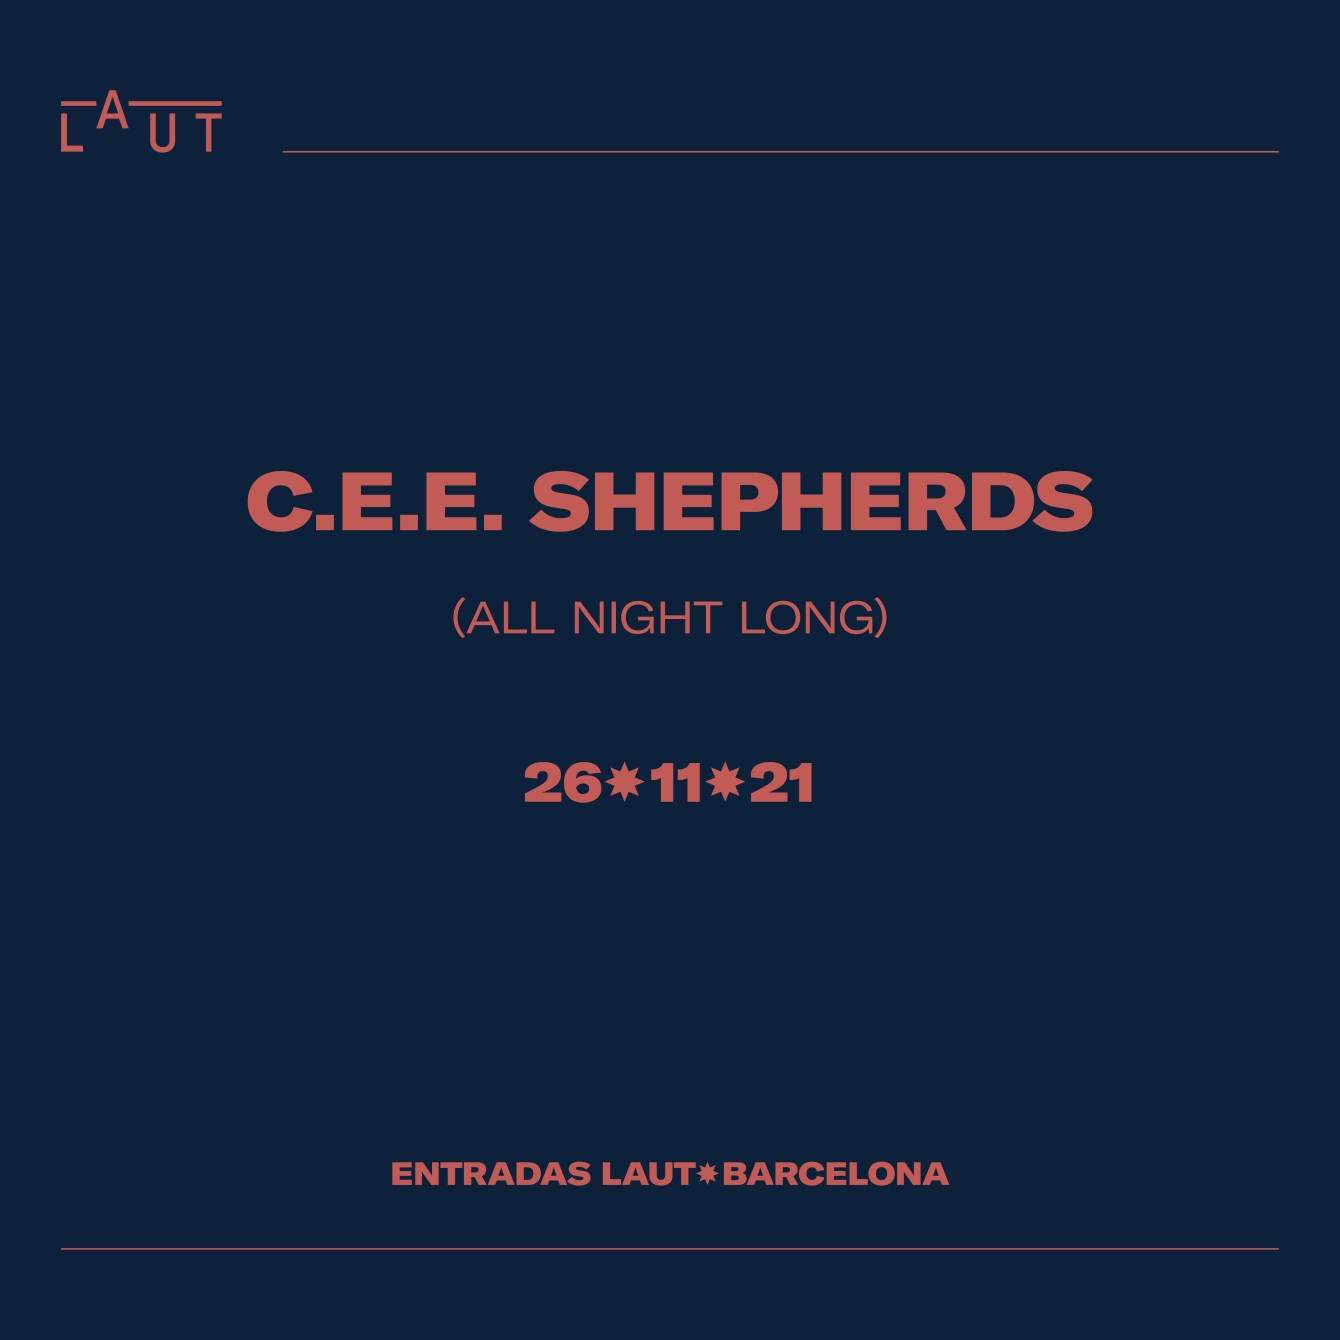 C.E.E. Shepherds (All Night Long) - フライヤー表